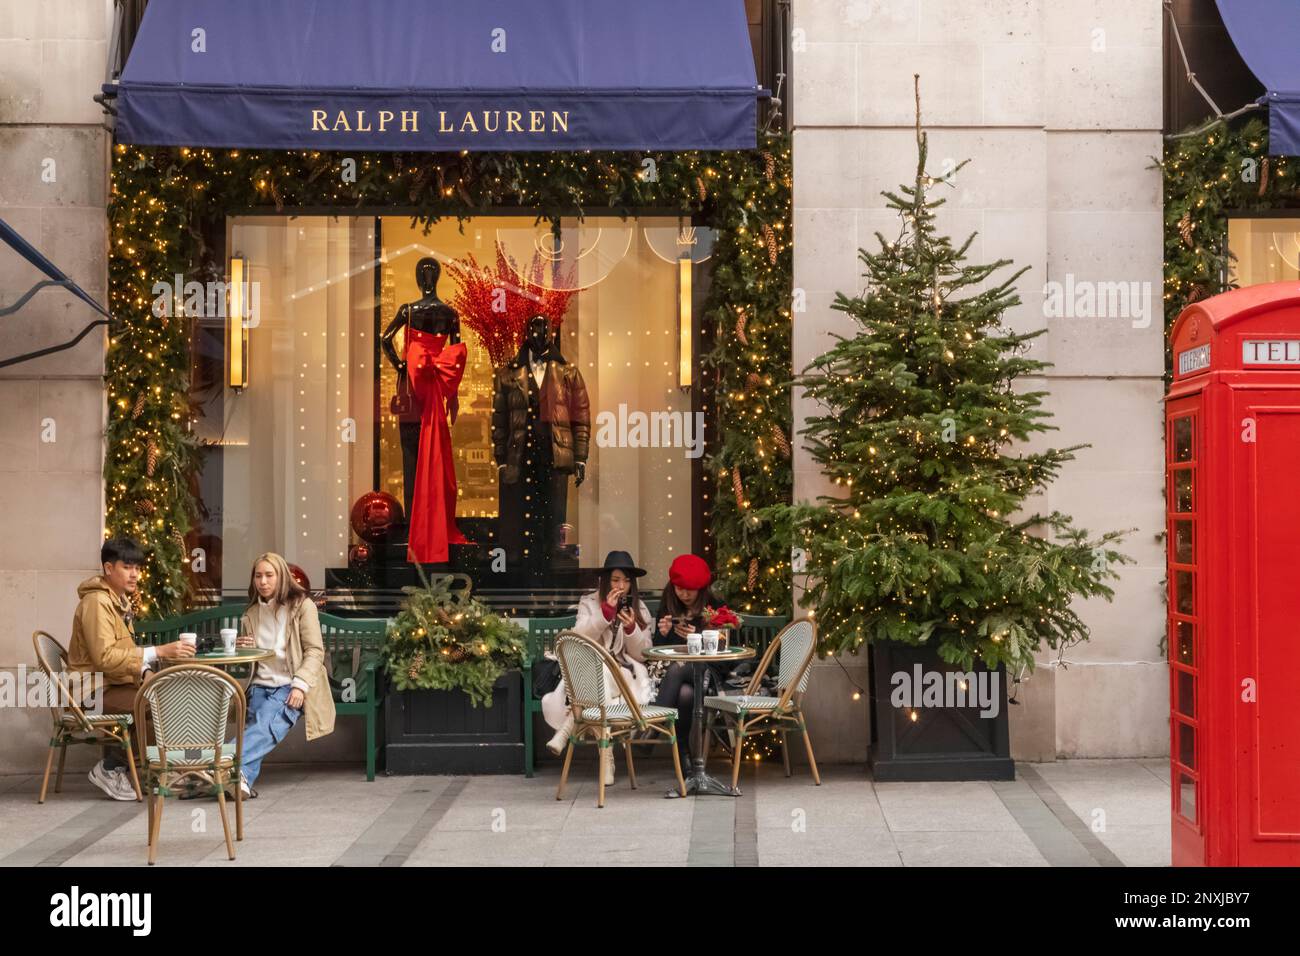 England, London, Piccadilly, New Bond Street, Außenansicht des Ralph Lauren Store mit Weihnachtsdekorationen Stockfoto